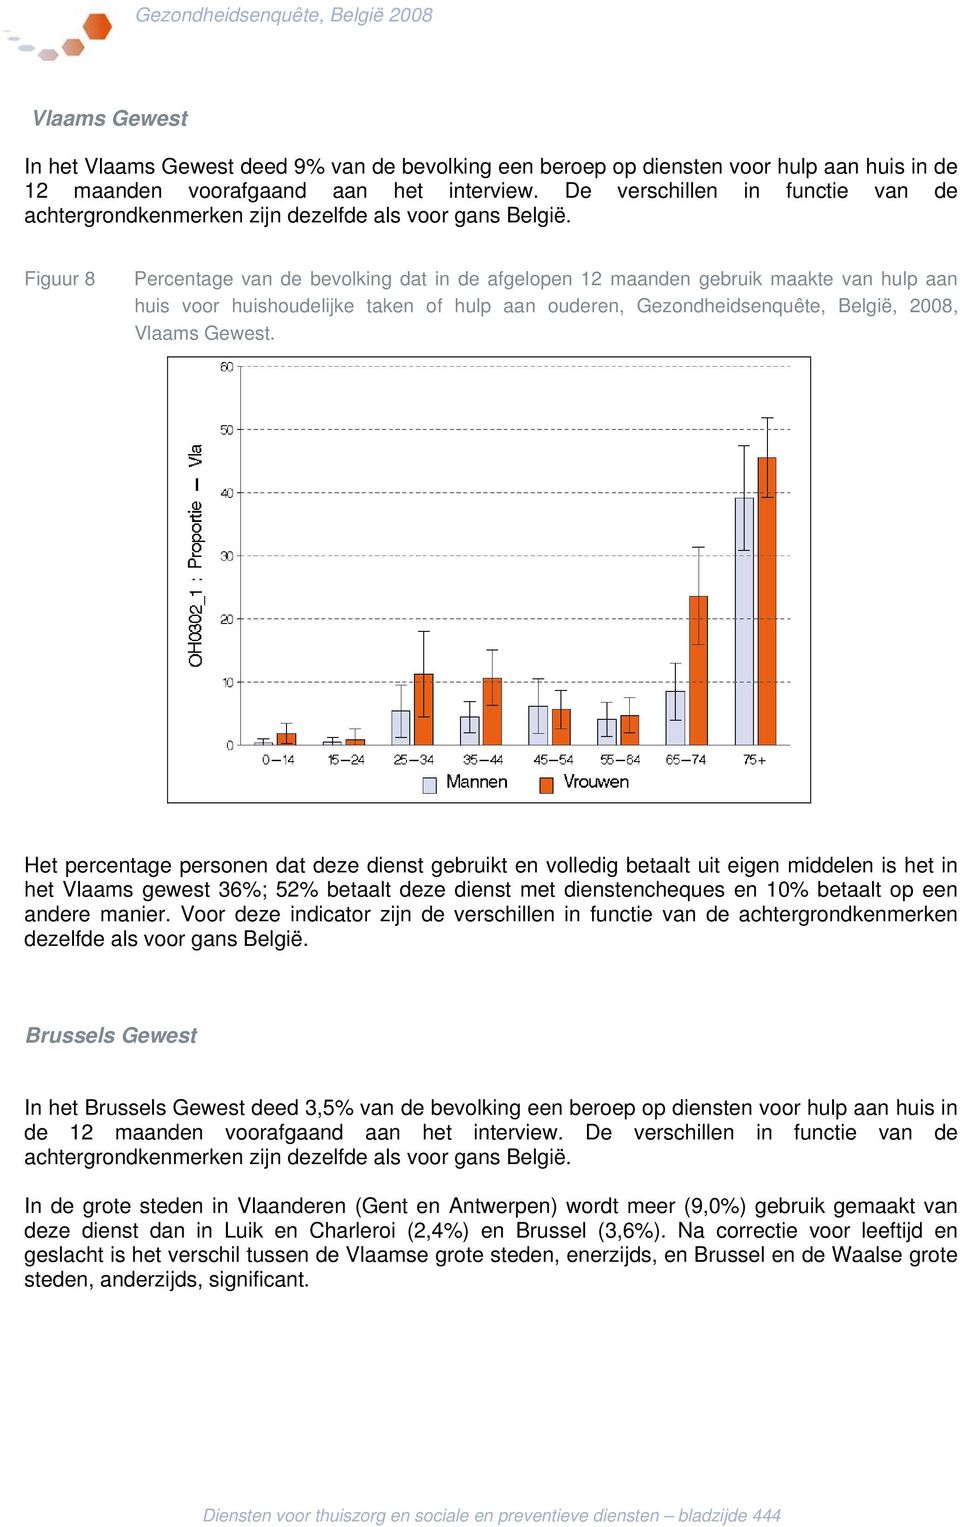 Figuur 8 Percentage van de bevolking dat in de afgelopen 12 maanden gebruik maakte van hulp aan huis voor huishoudelijke taken of hulp aan ouderen, Gezondheidsenquête, België, 2008, Vlaams Gewest.